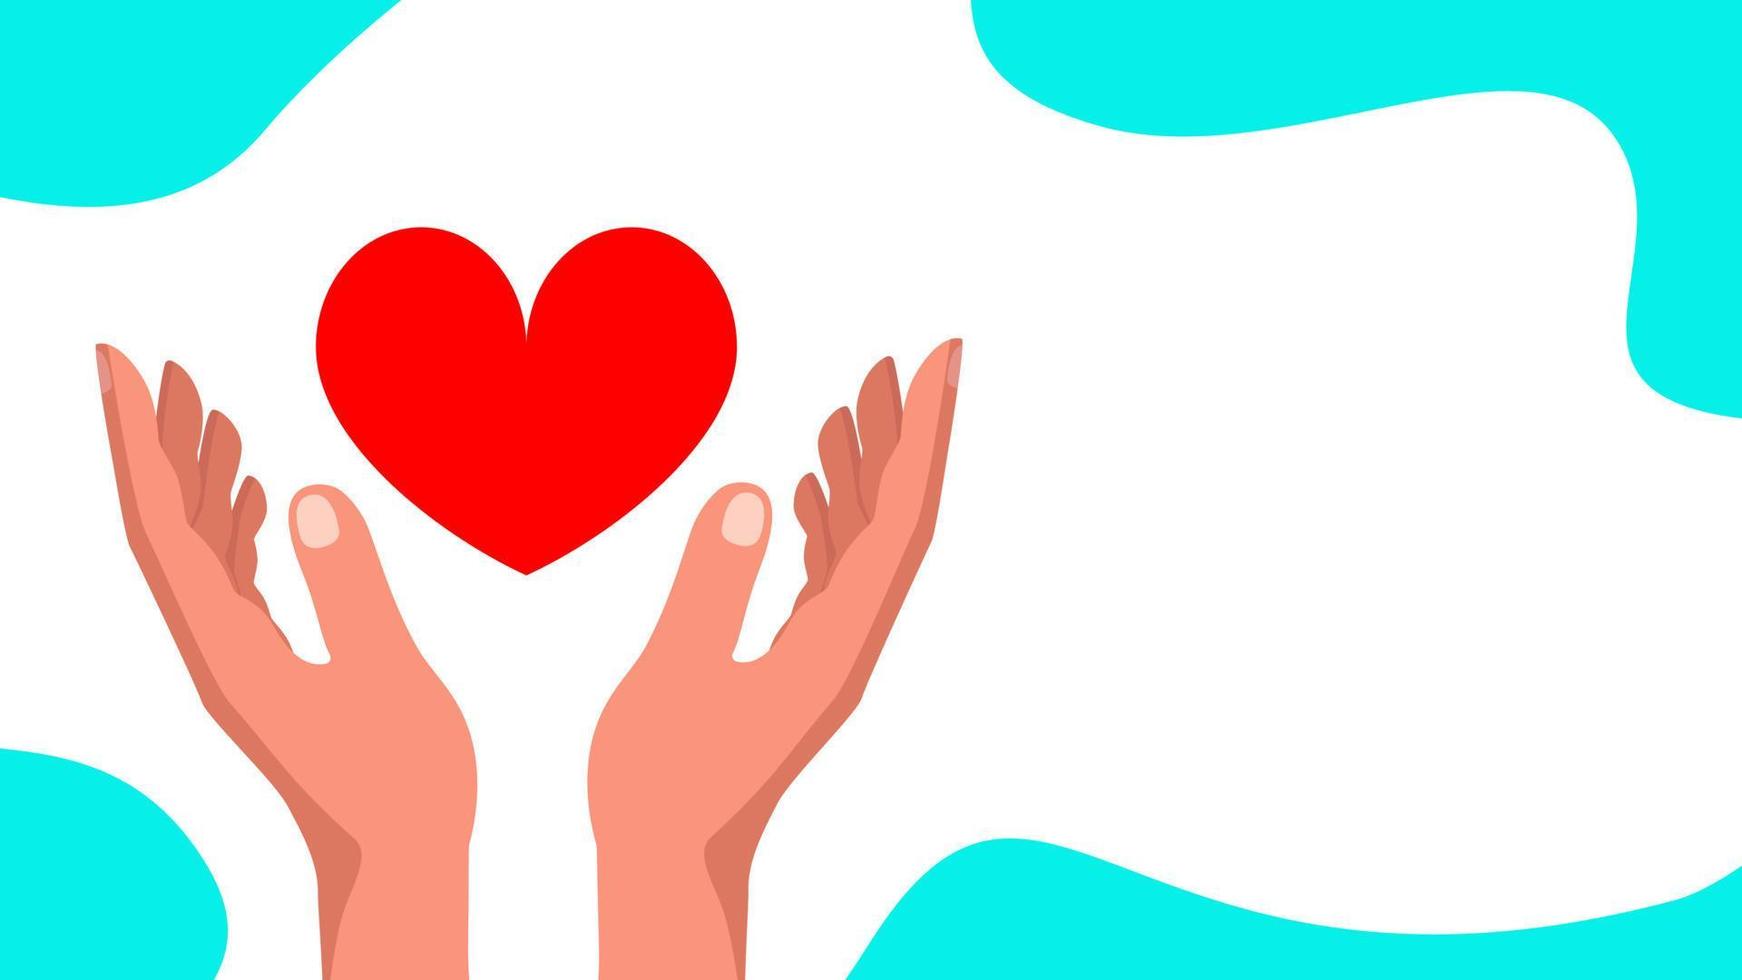 manos humanas y corazón rojo. concepto de cardiología, voluntariado, esperanza y donación. diseño de pancartas ilustración de stock vectorial. vector